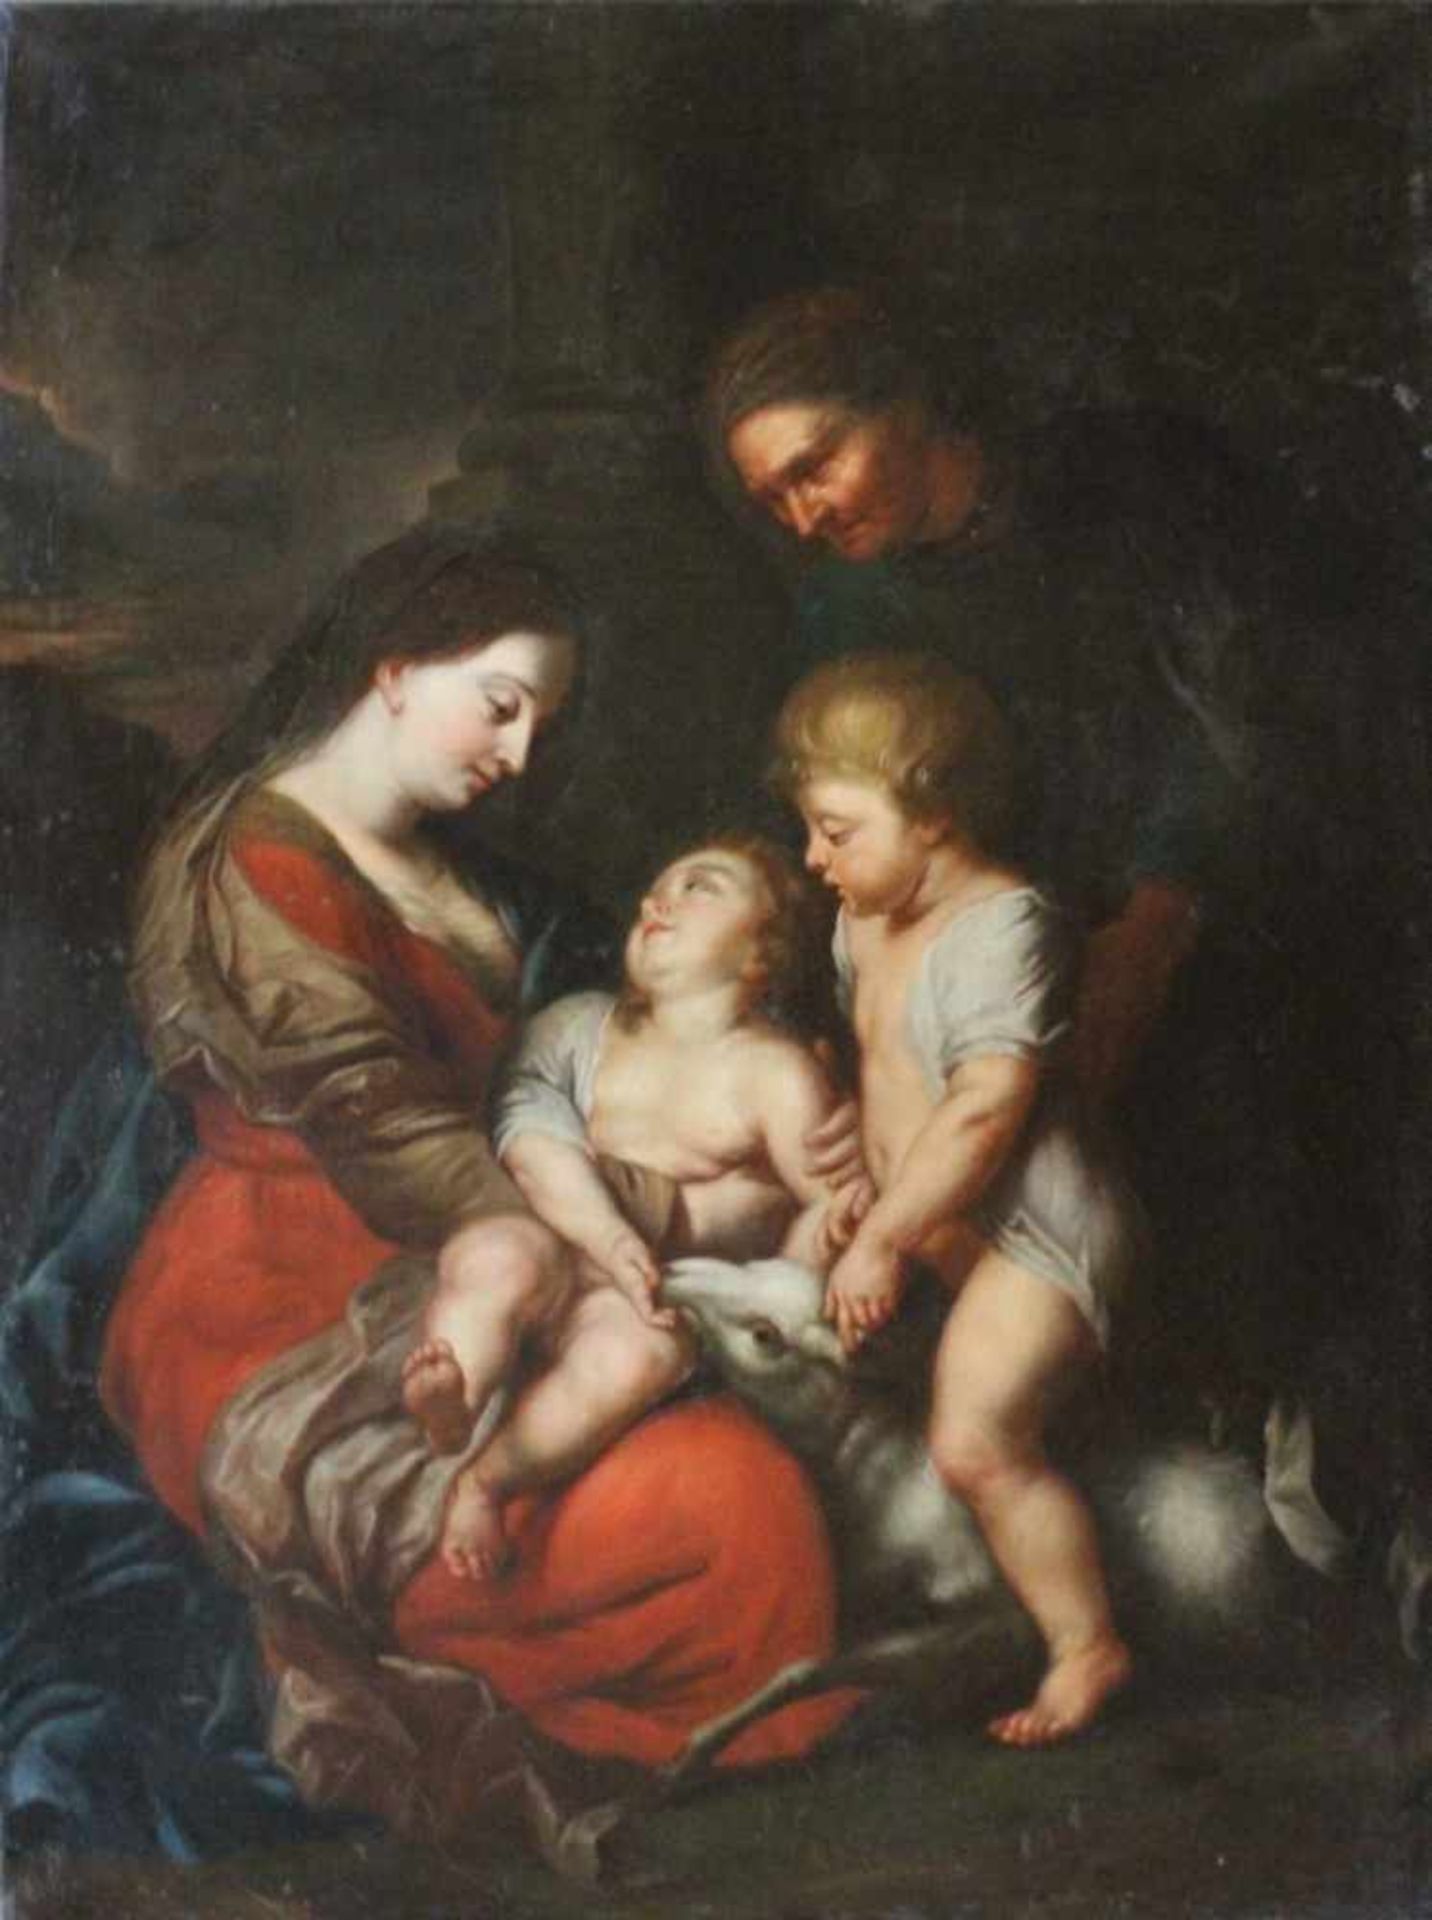 Gemälde - Nachfolger Peter Paul Rubens (1577 Siegen - 1640 Antwerpen) "Die Jungfrau Maria und Kind